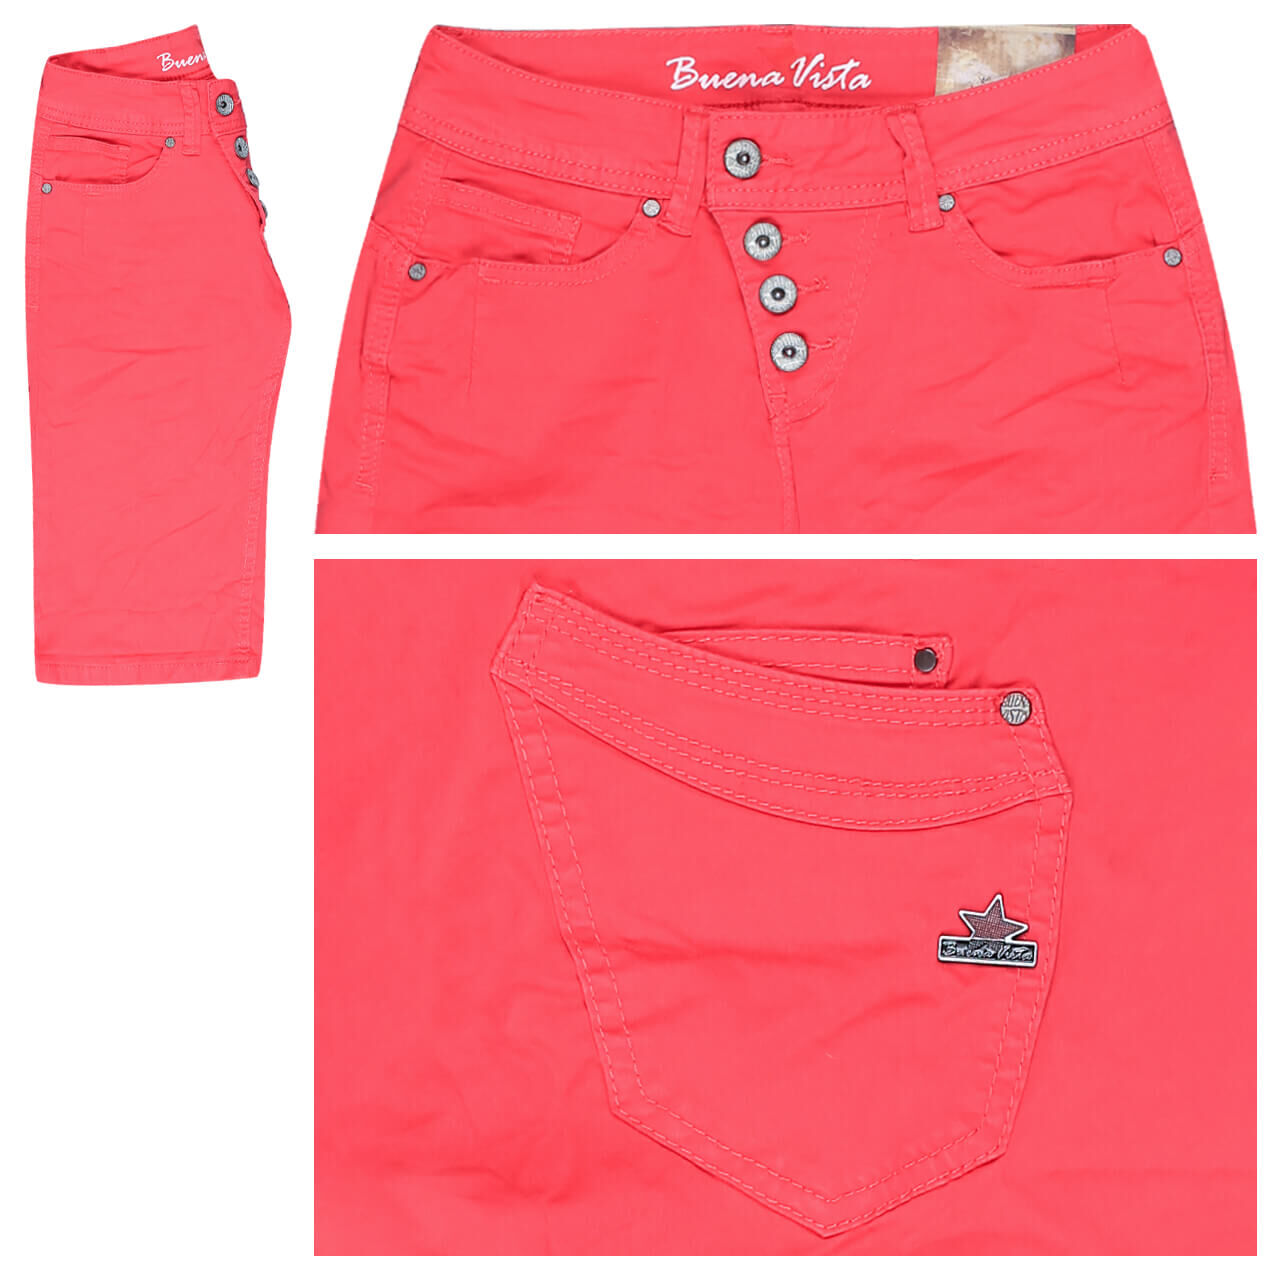 Buena Vista Malibu-Short Stretch Twill Baumwollhose für Damen in Rot, FarbNr.: 4411